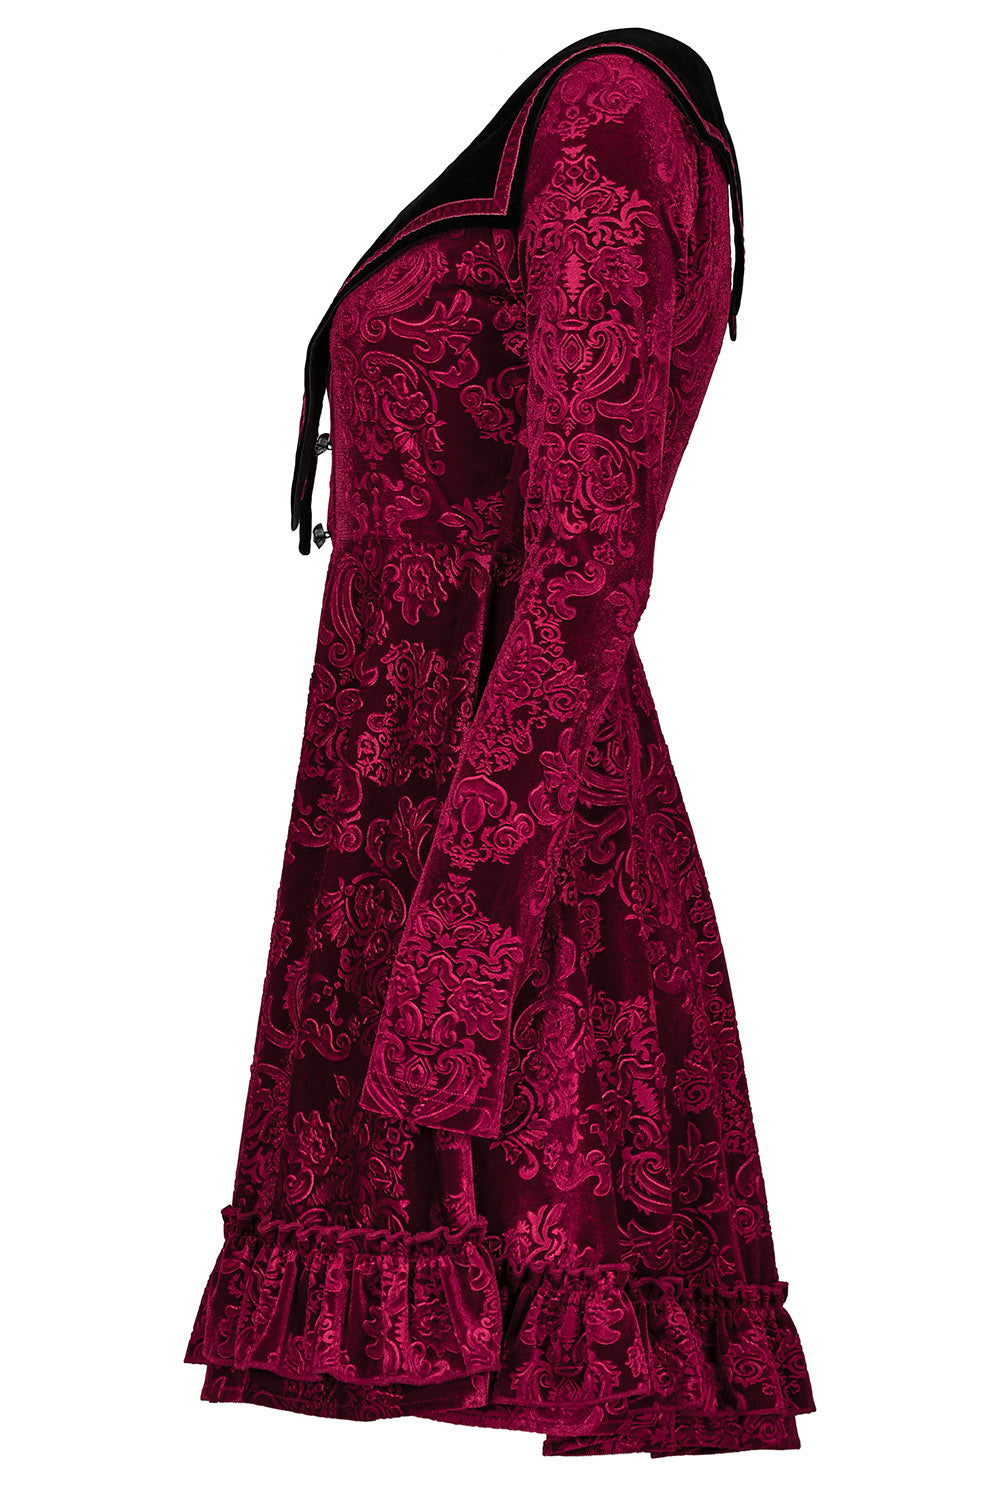 Bloodletting Velvet Dress [VAMP RED]